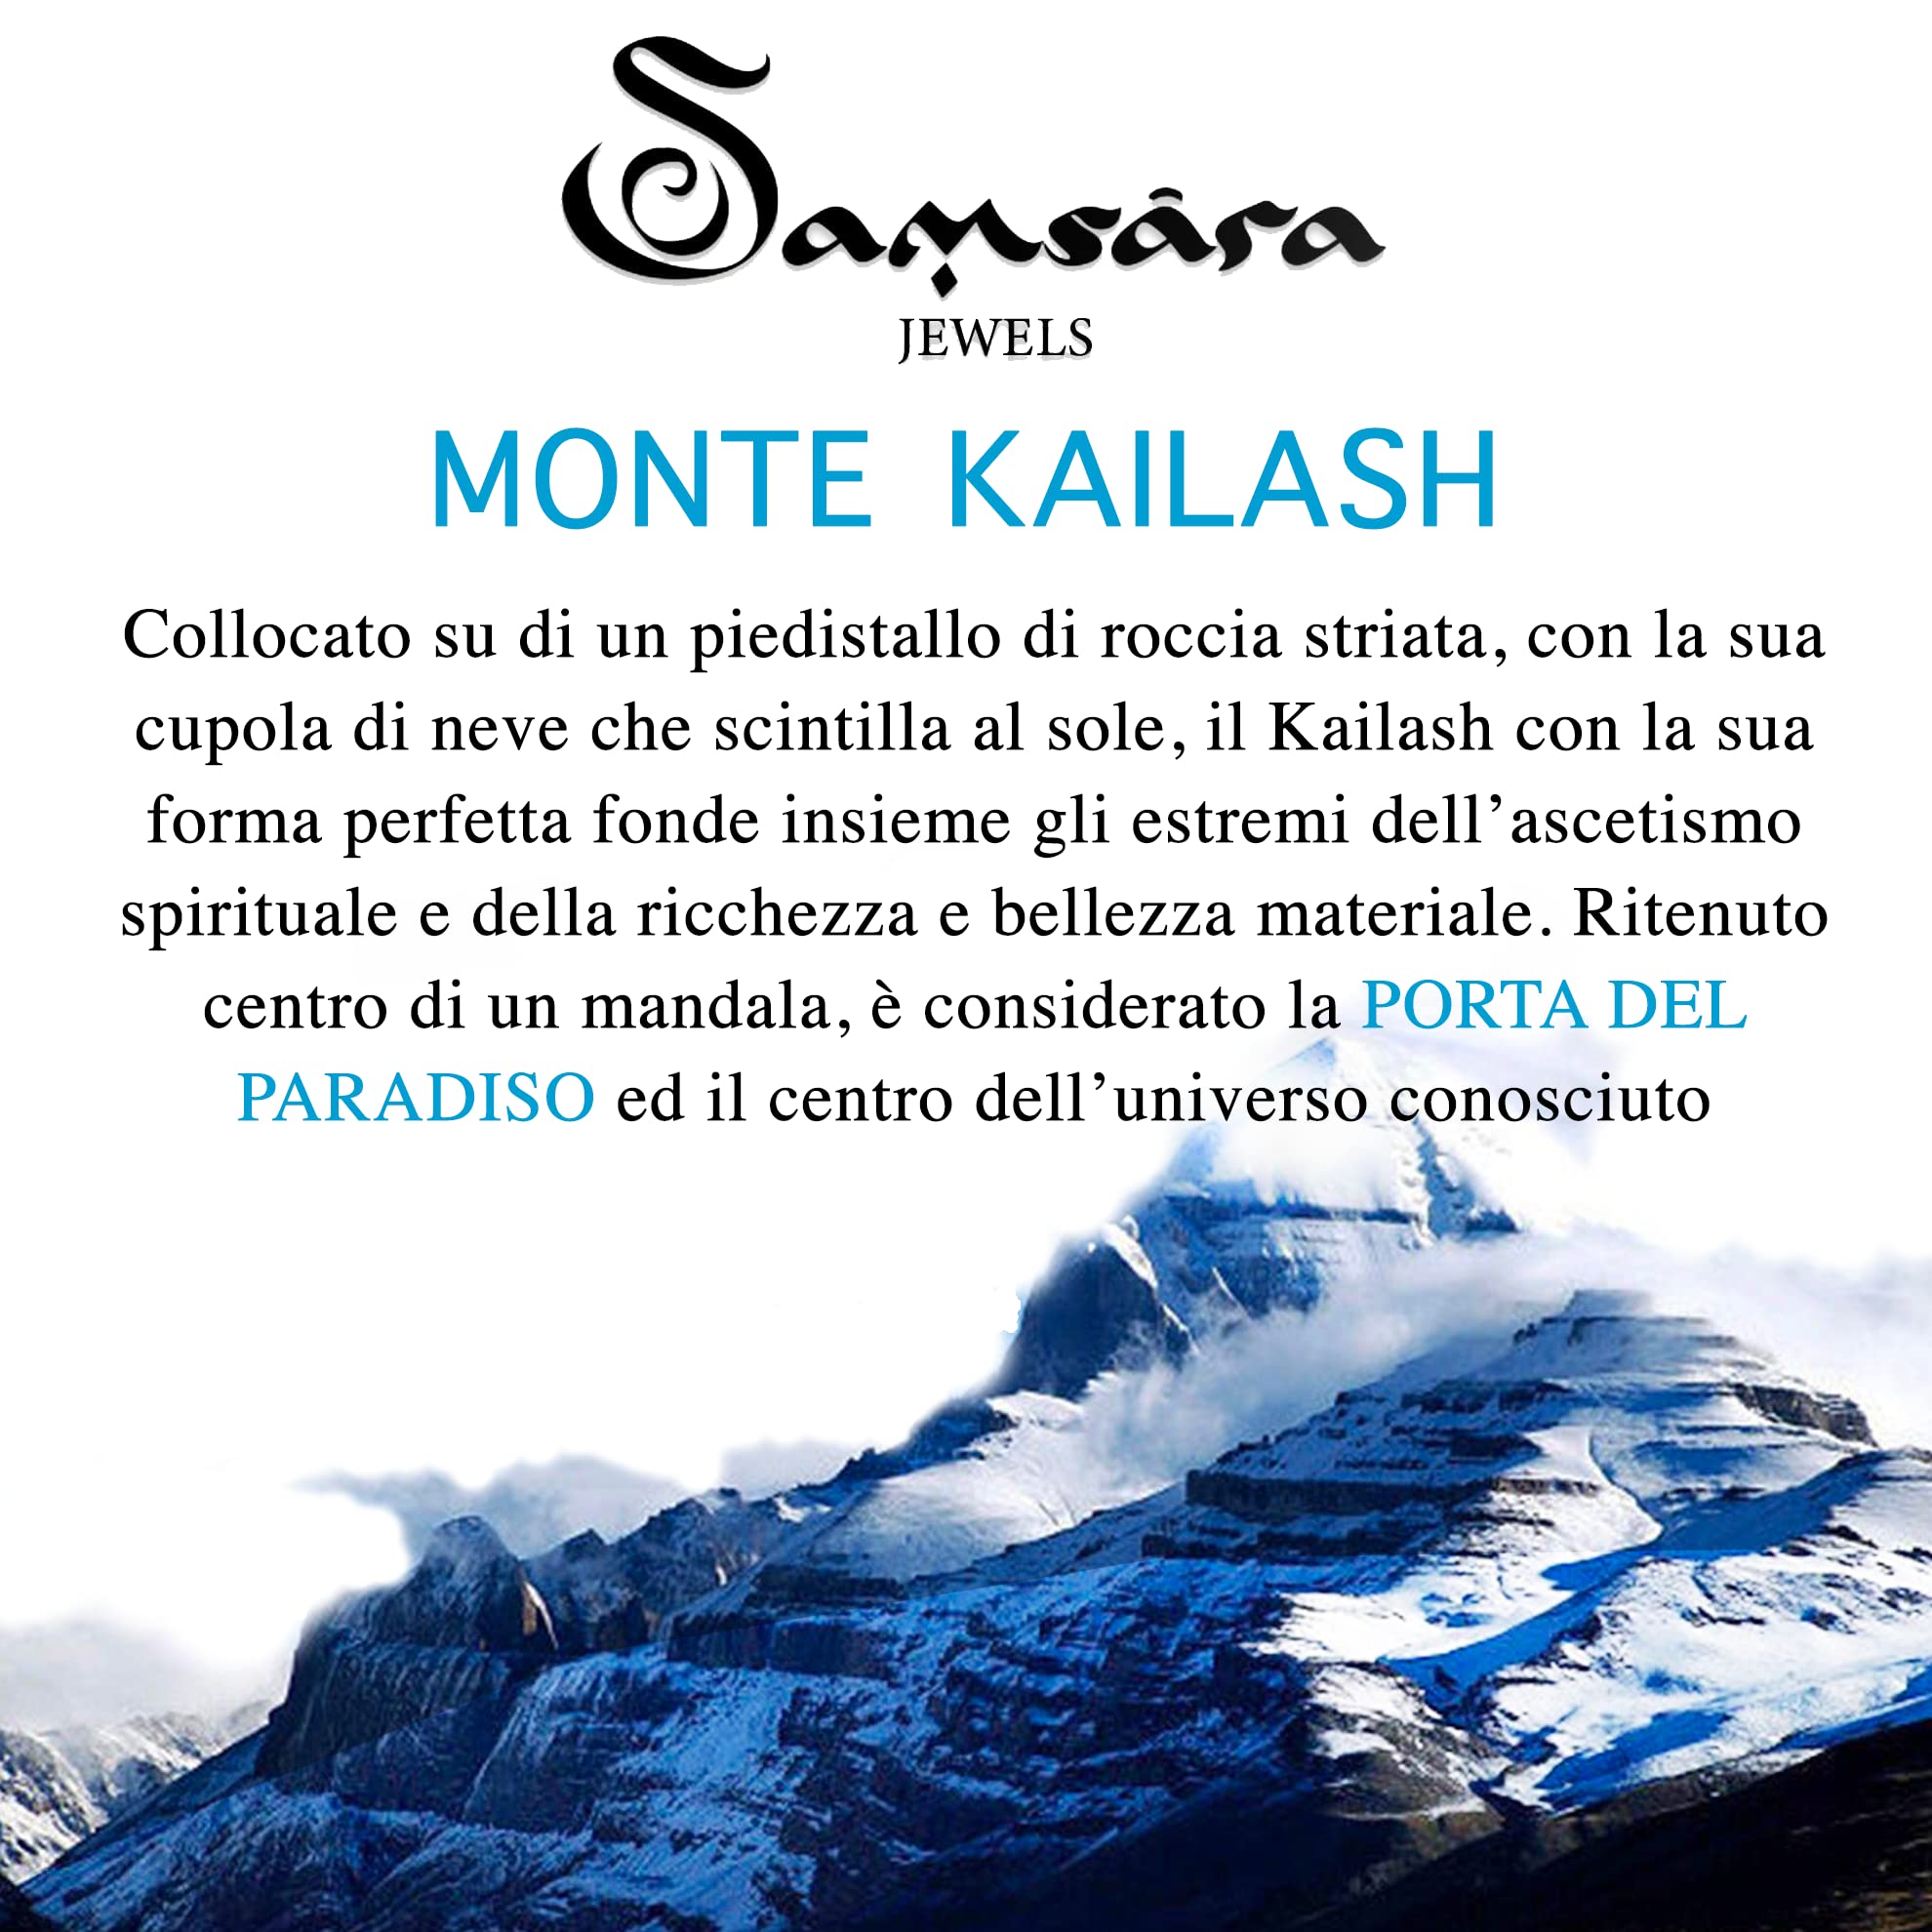 Samsara Bracciale Kailash Tibetano Buddista - Bracciale Spirituale Con Turchese Celeste - Filo in cotone cerato Bianco